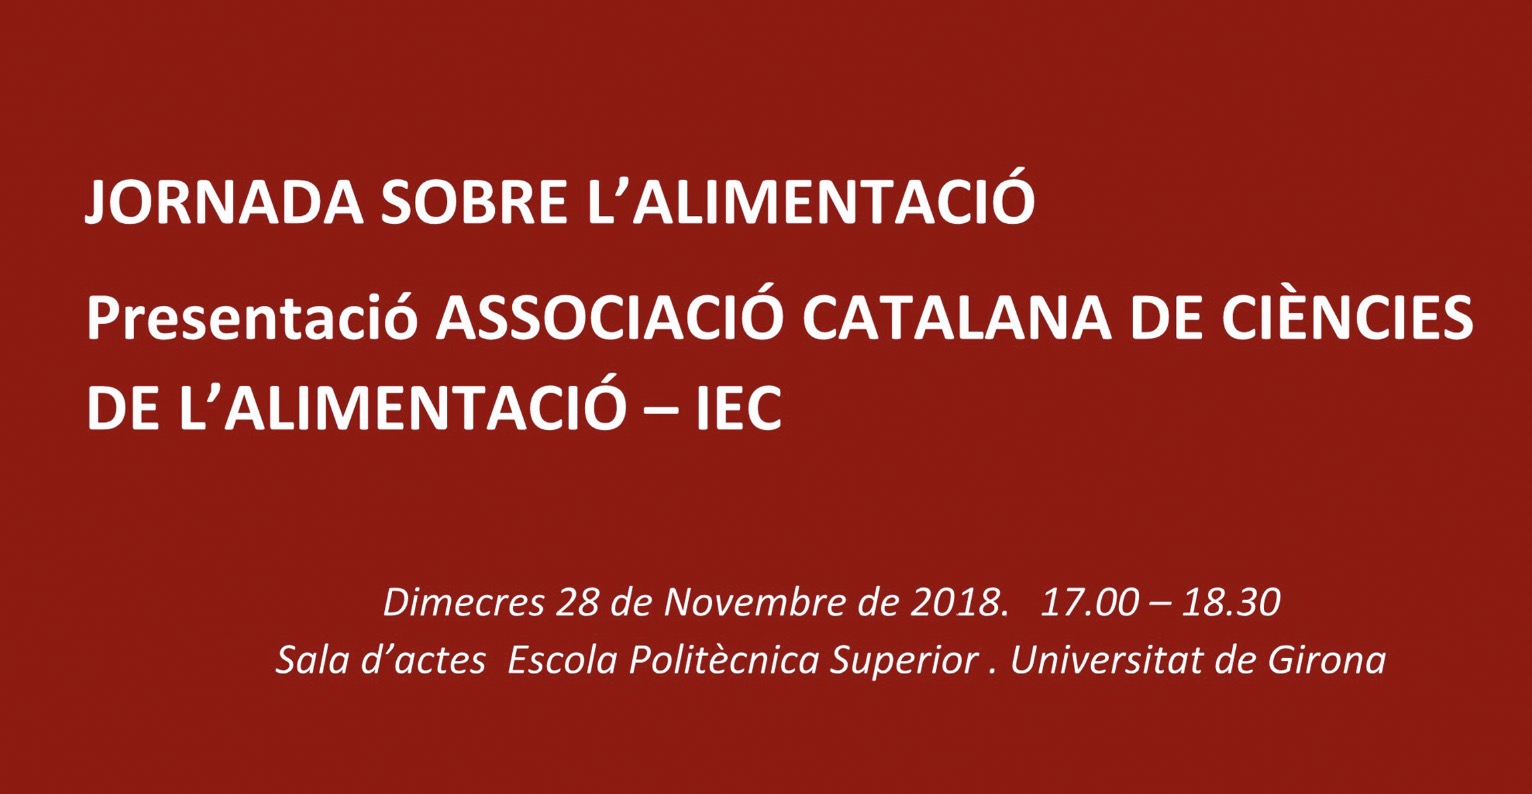 Jornada presentació de l’ ACCA a Girona (28 novembre, Girona)